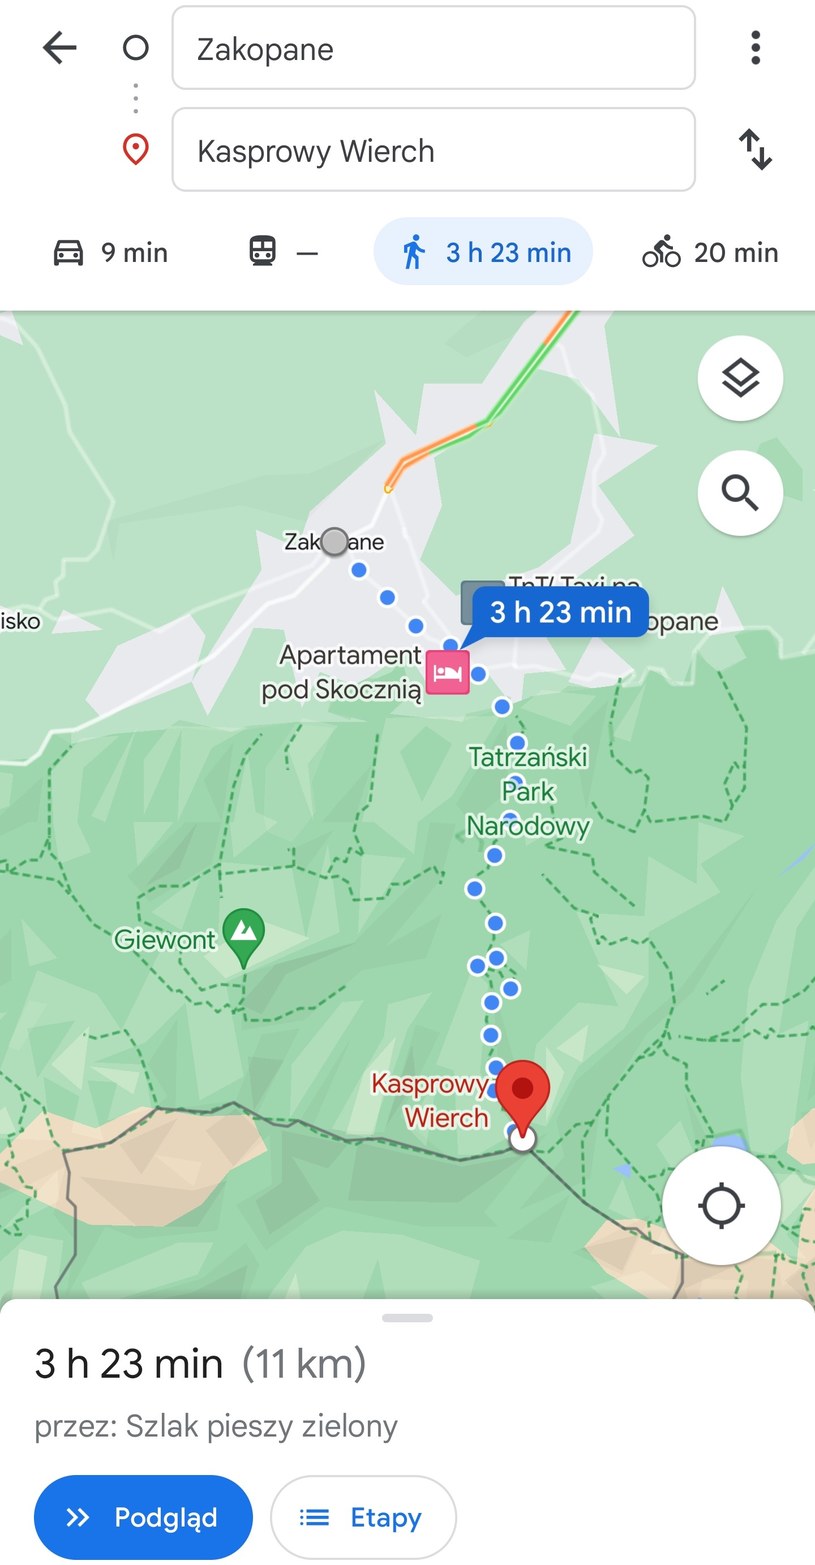 Trasa piesza z Zakopanego na Kasprowy Wierch w Mapach Google. /materiał zewnętrzny